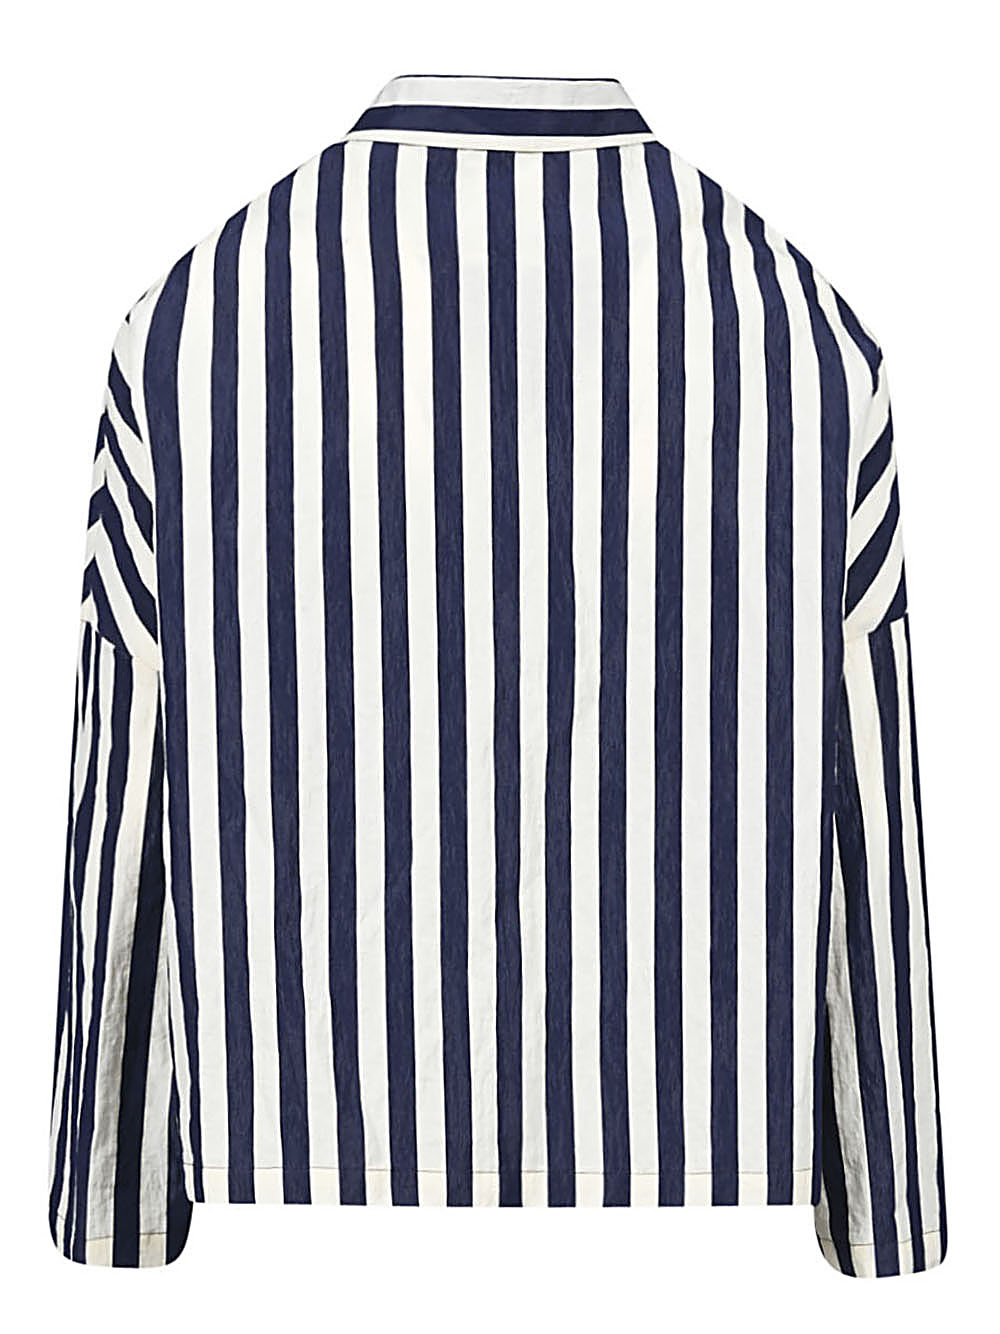 Apuntob APUNTOB- Cotton Striped Jacket